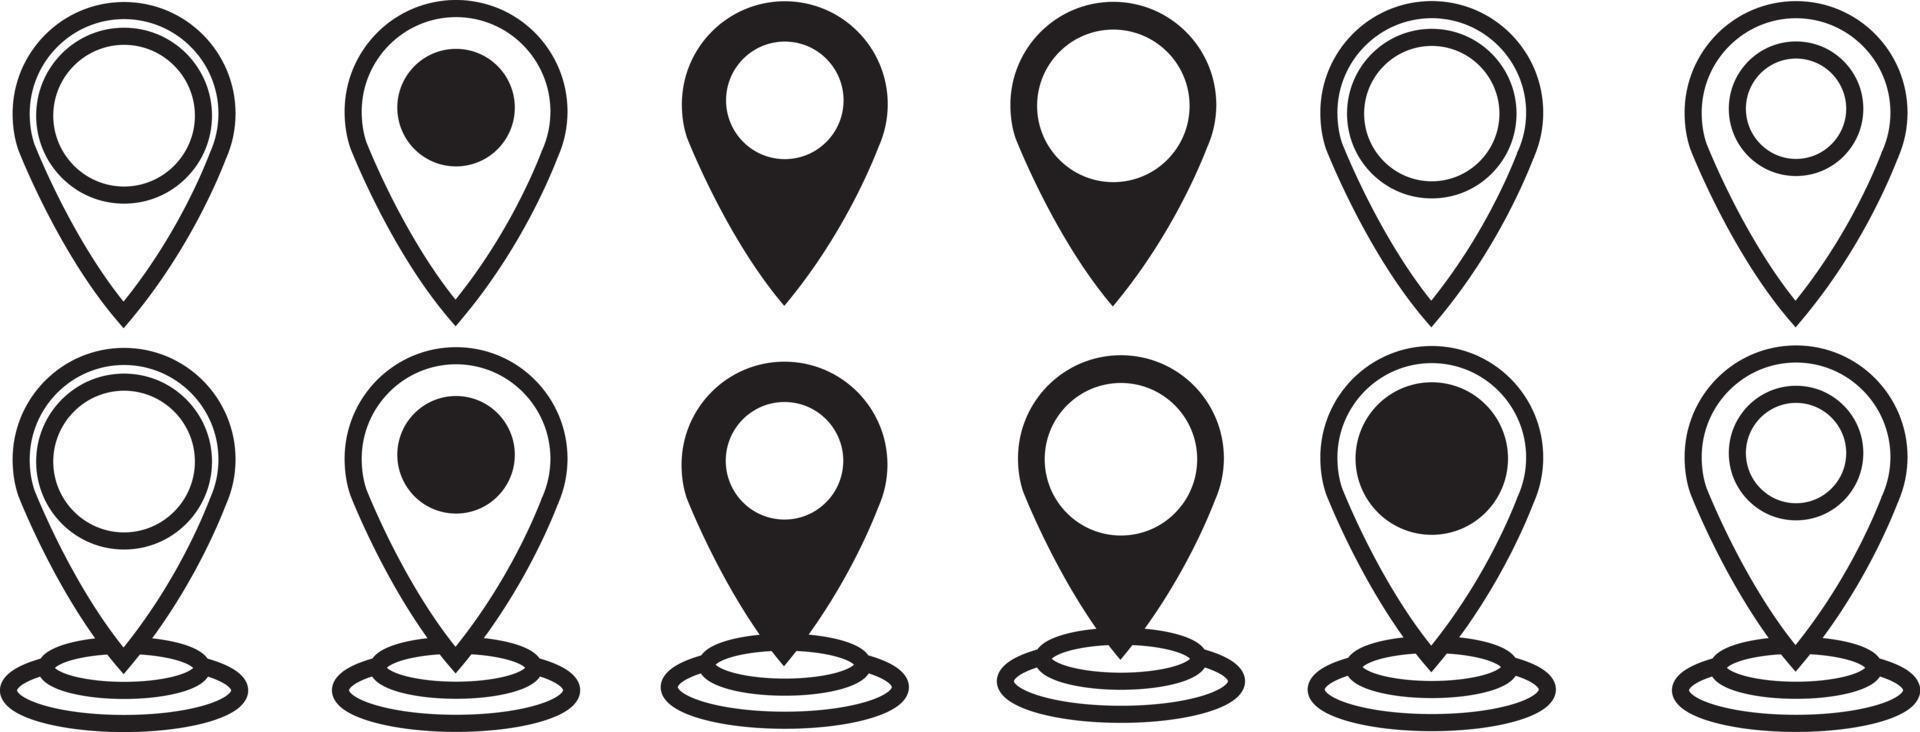 pino de mapas. ícone do mapa de localização. vetor